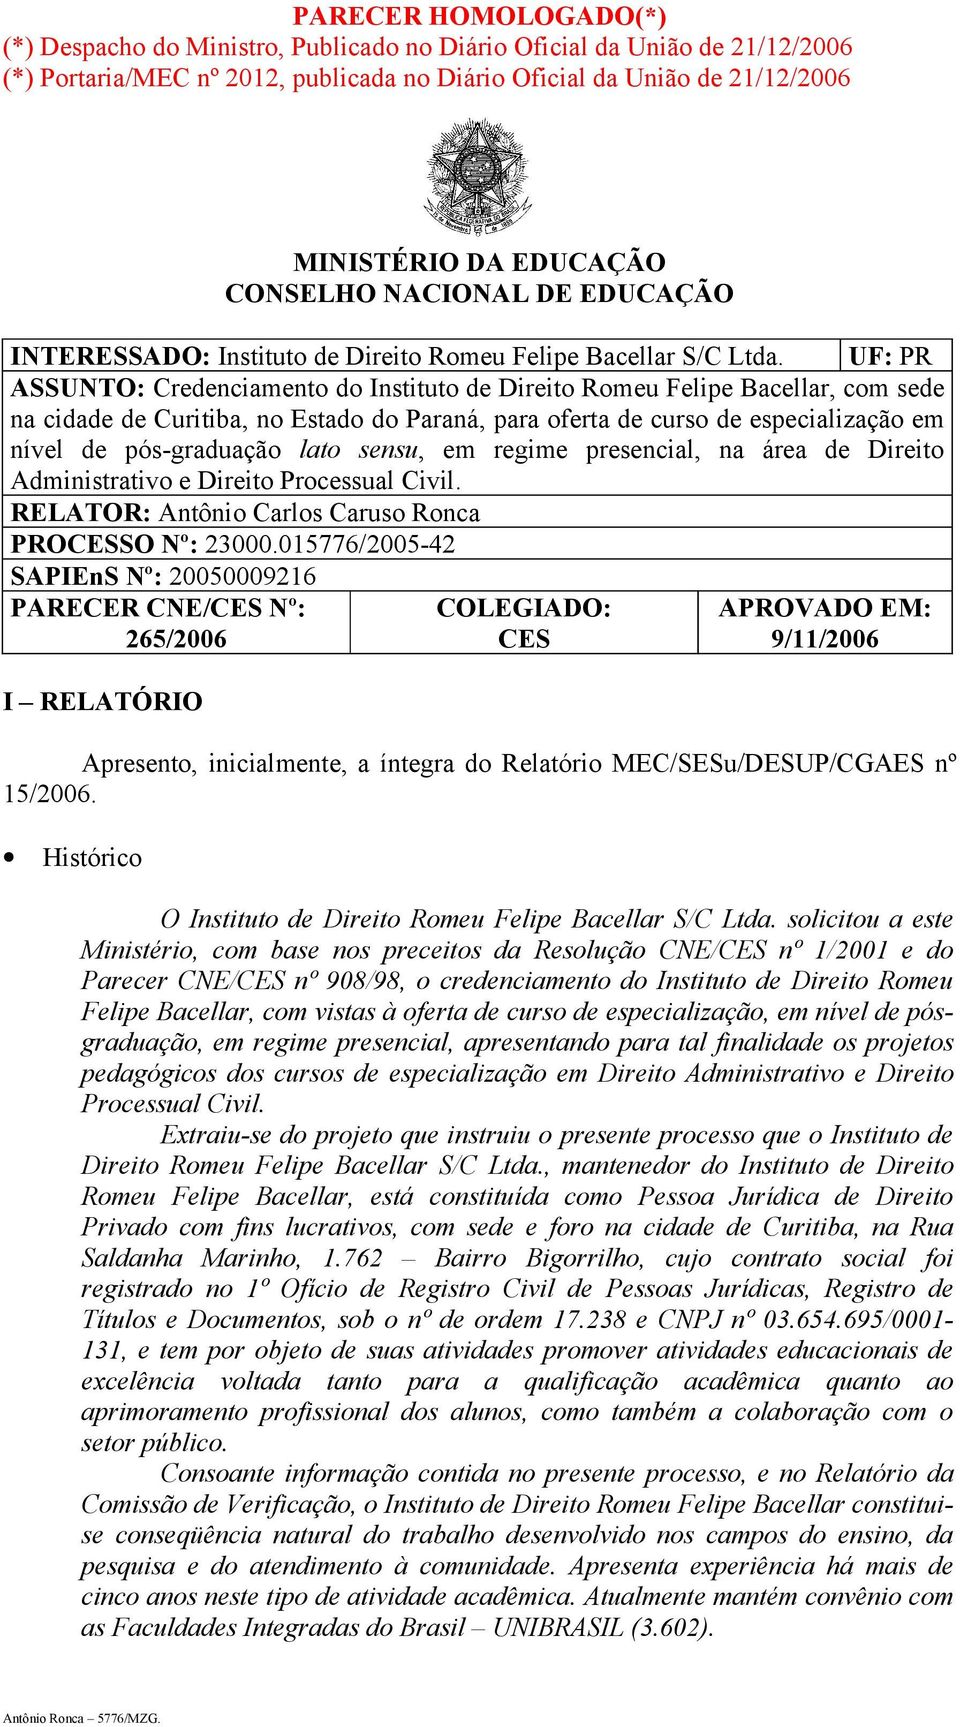 UF: PR ASSUNTO: Credenciamento do Instituto de Direito Romeu Felipe Bacellar, com sede na cidade de Curitiba, no Estado do Paraná, para oferta de curso de especialização em nível de pós-graduação